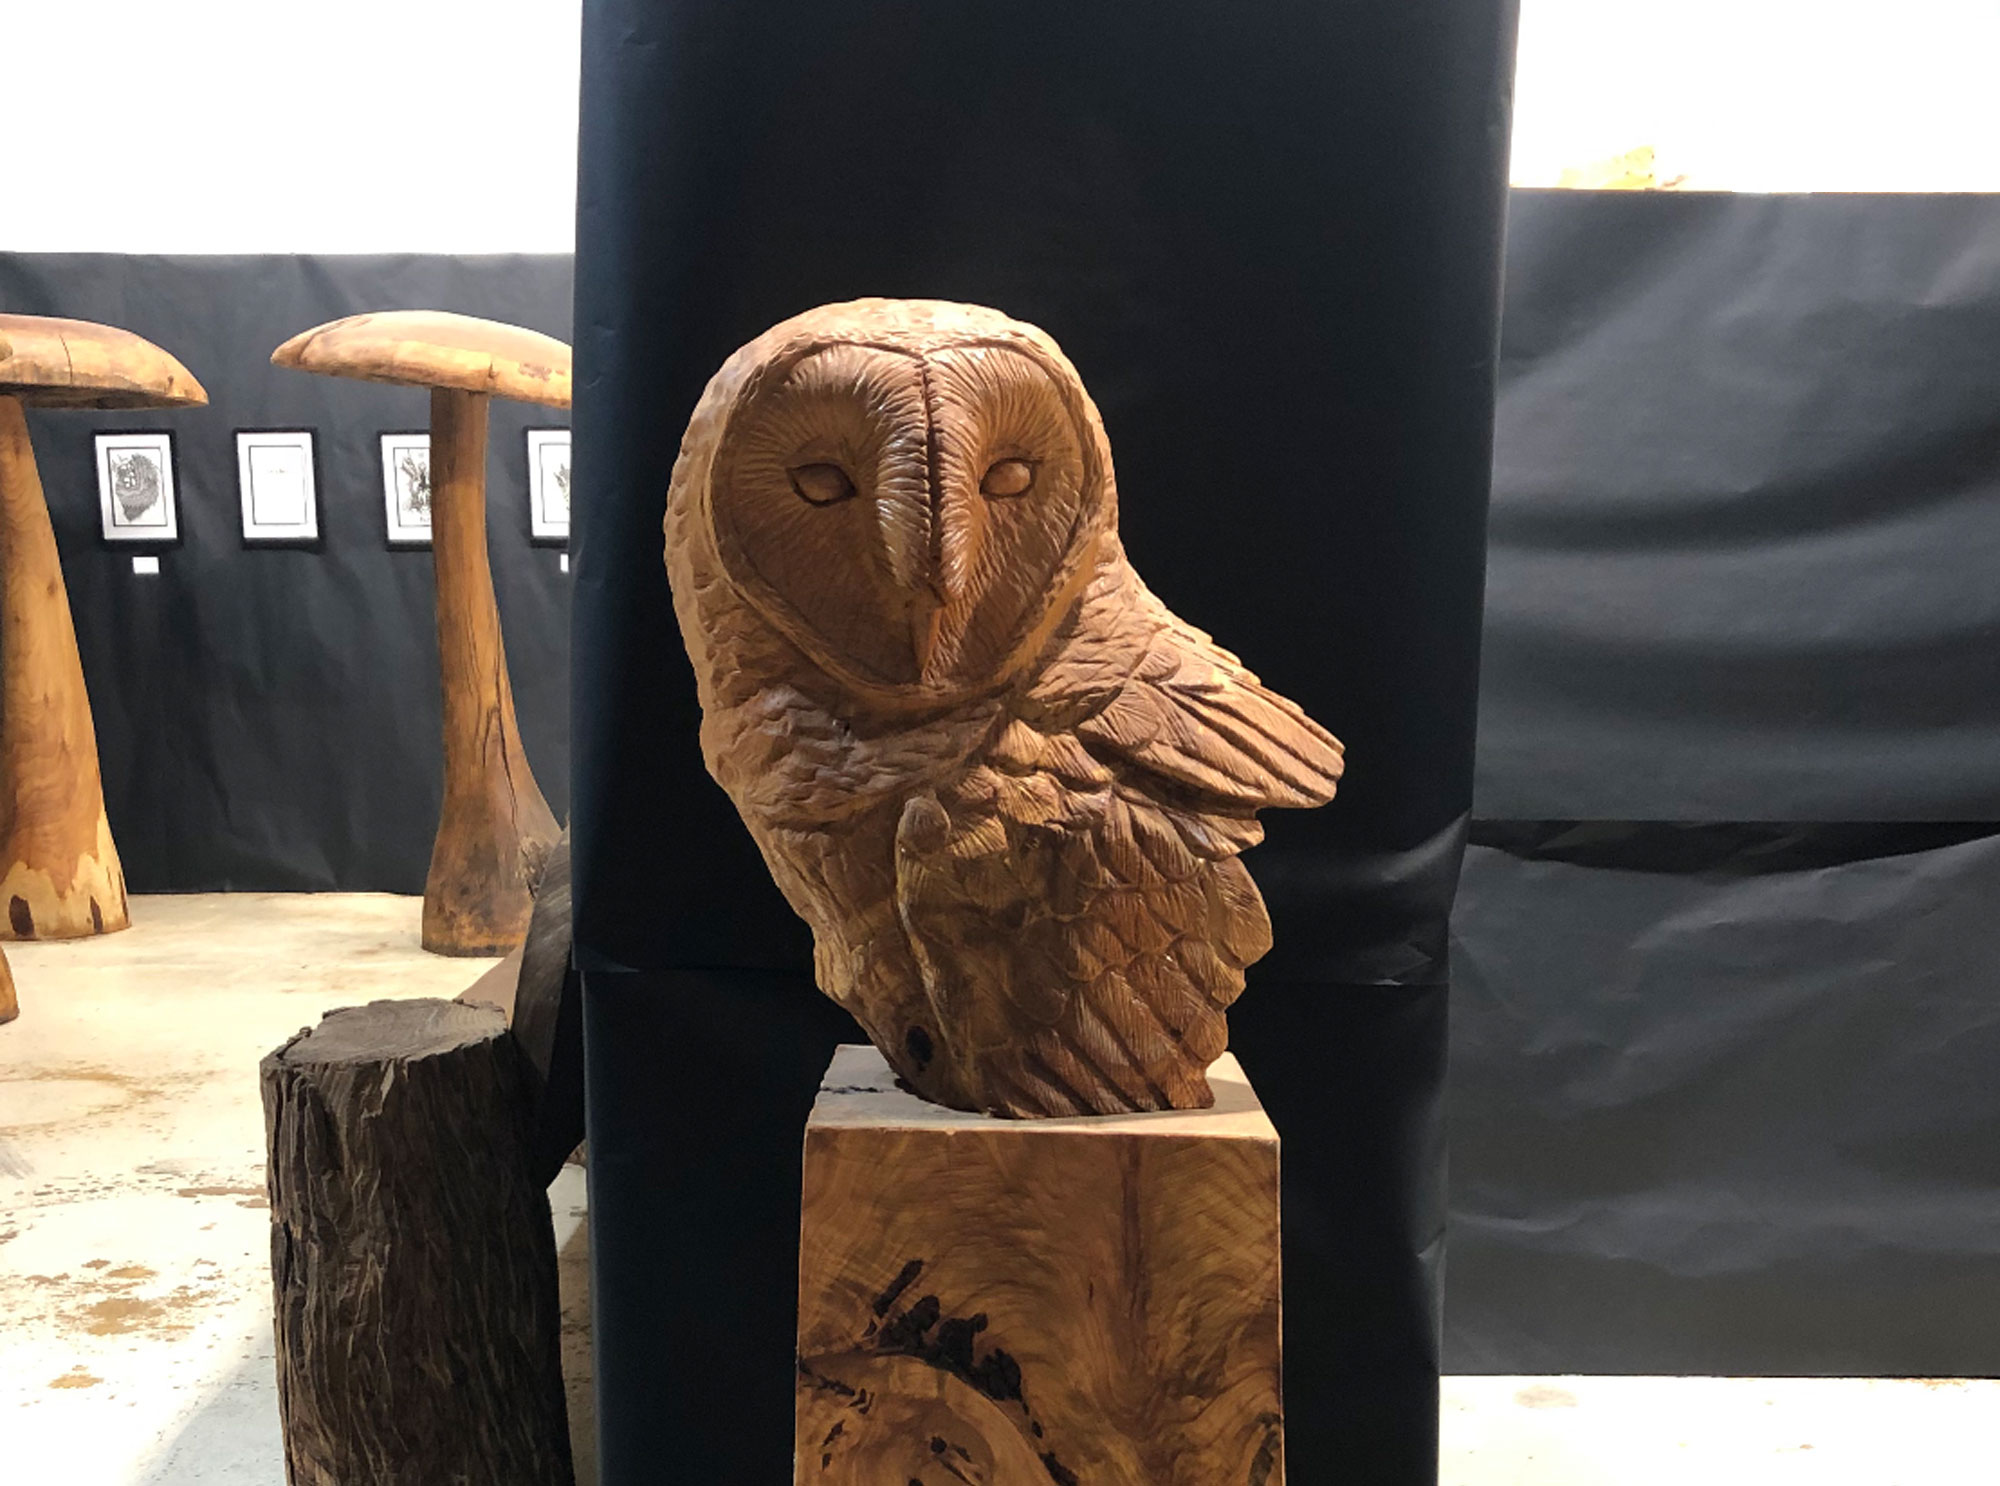 Wooden barn owl bust sculpture